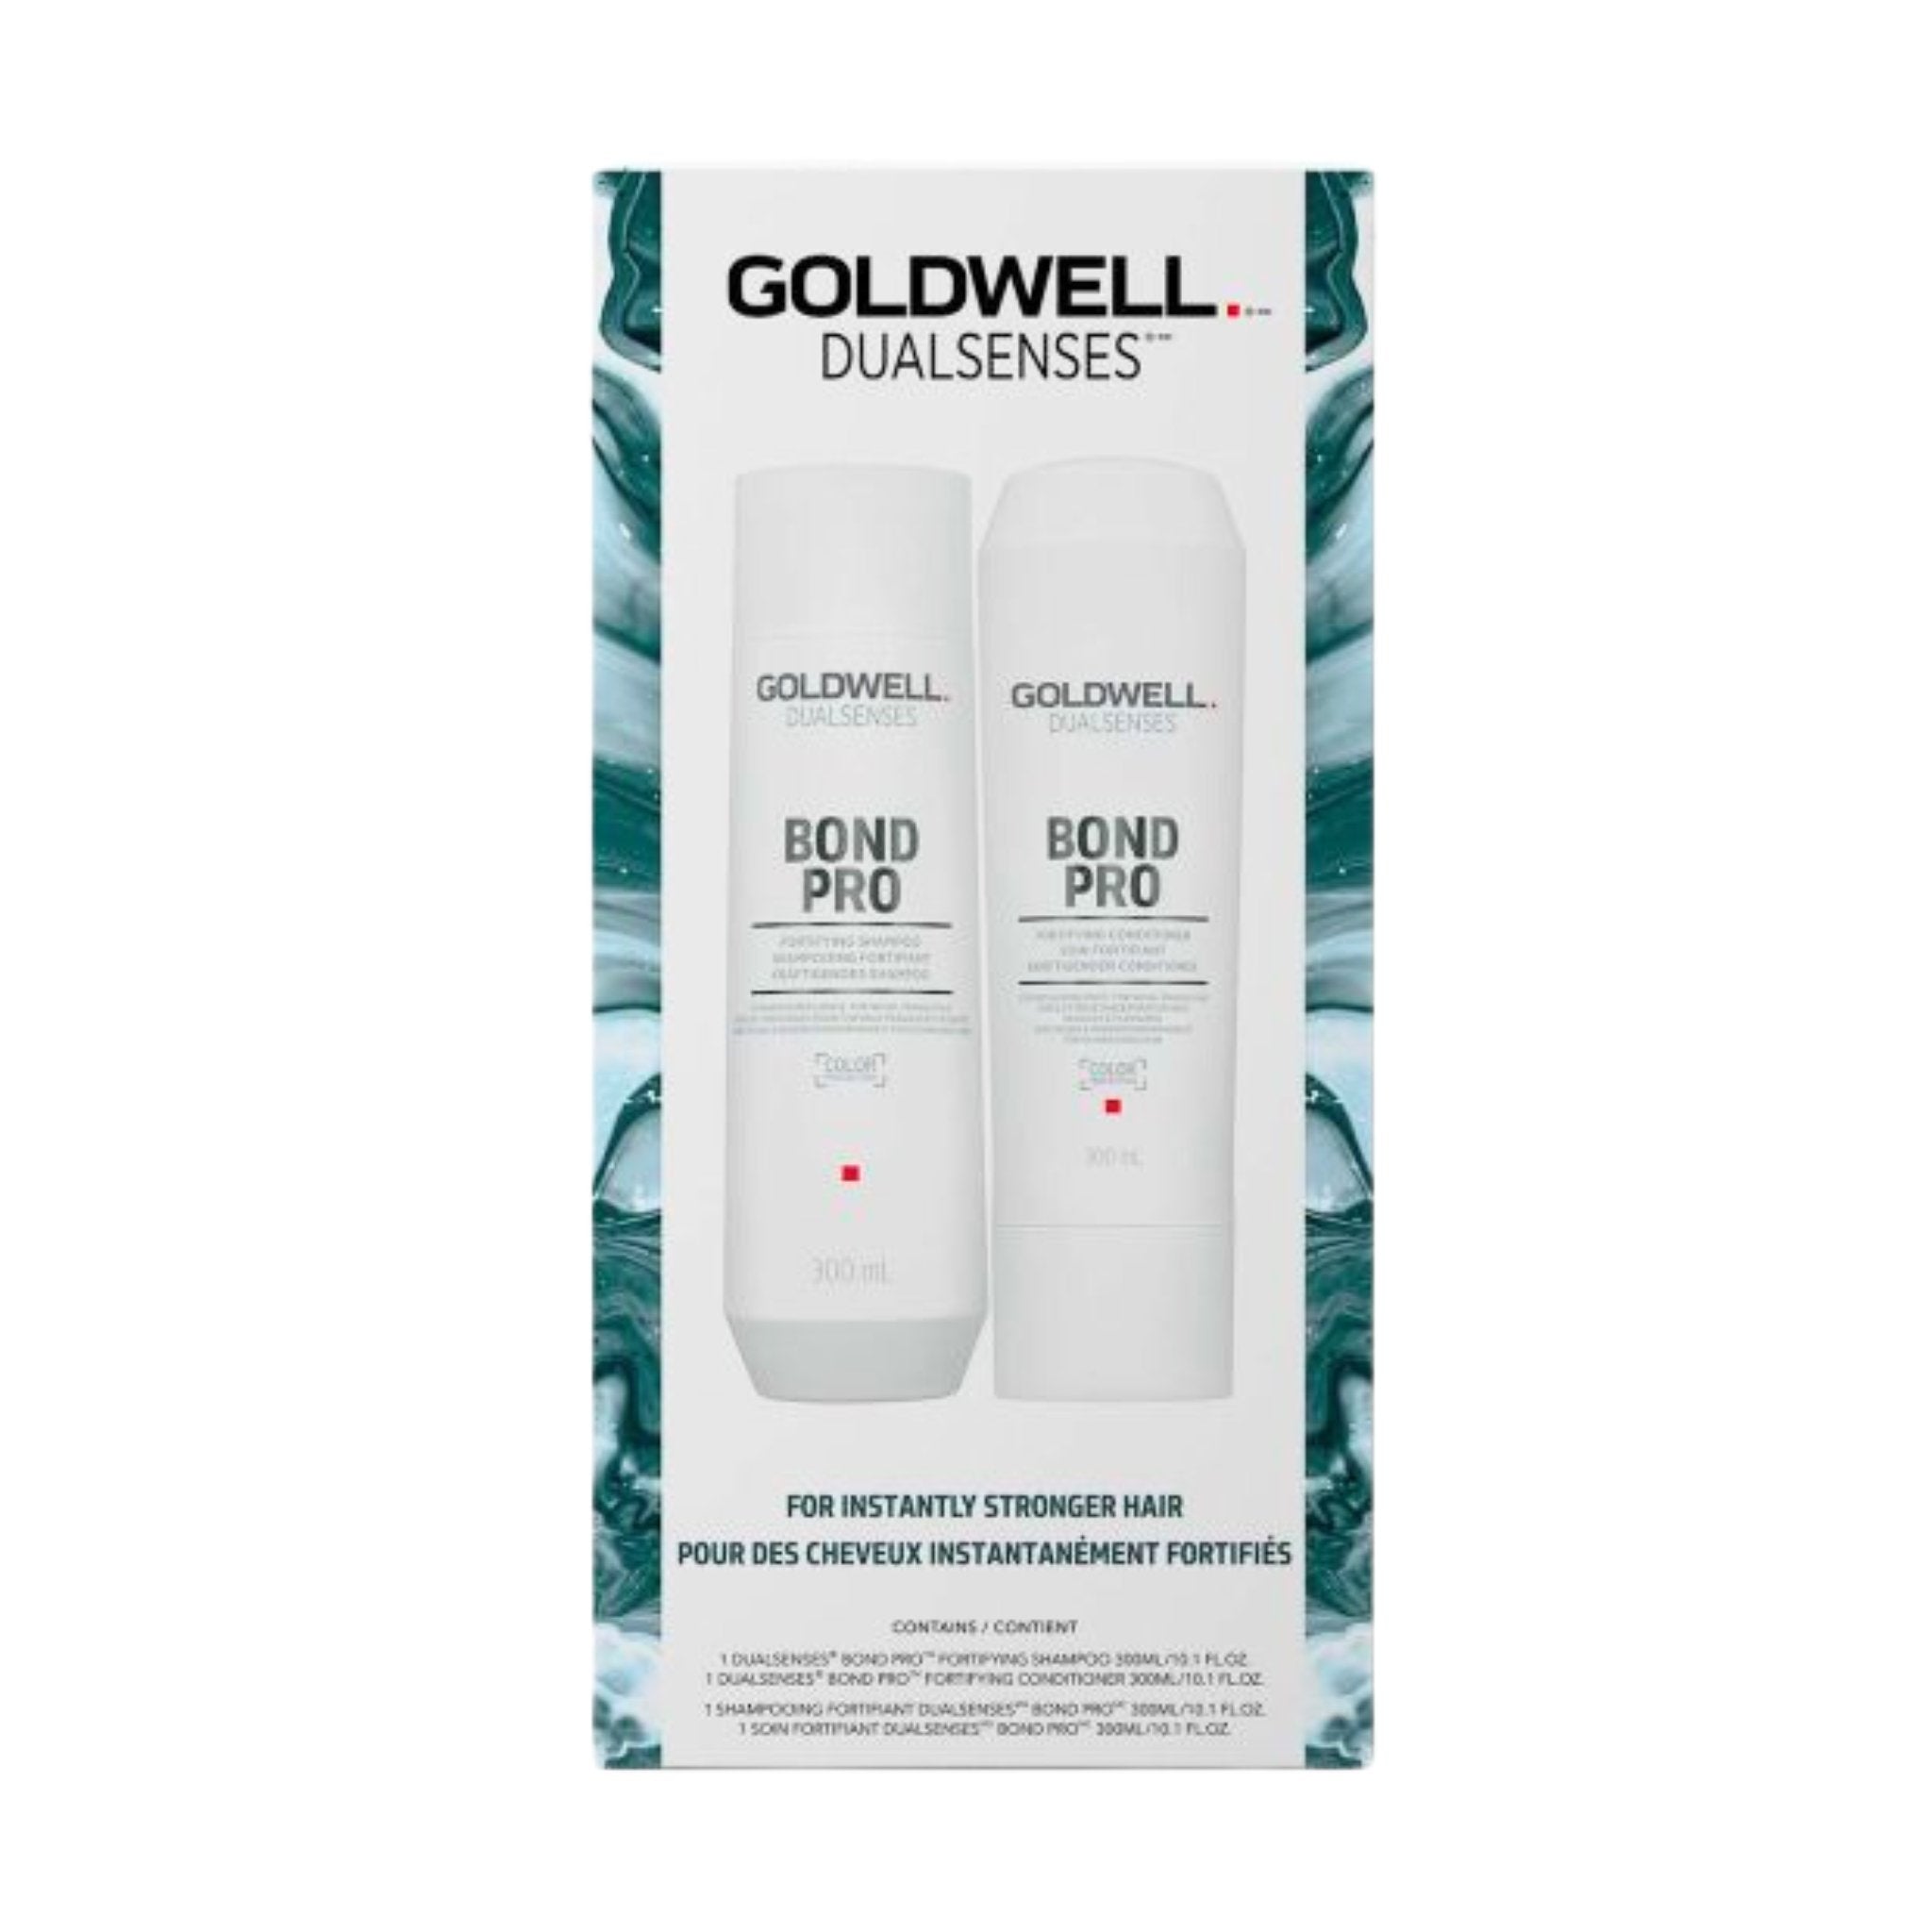 Goldwell. Duo Printanier Bond Pro - Concept C. Shop